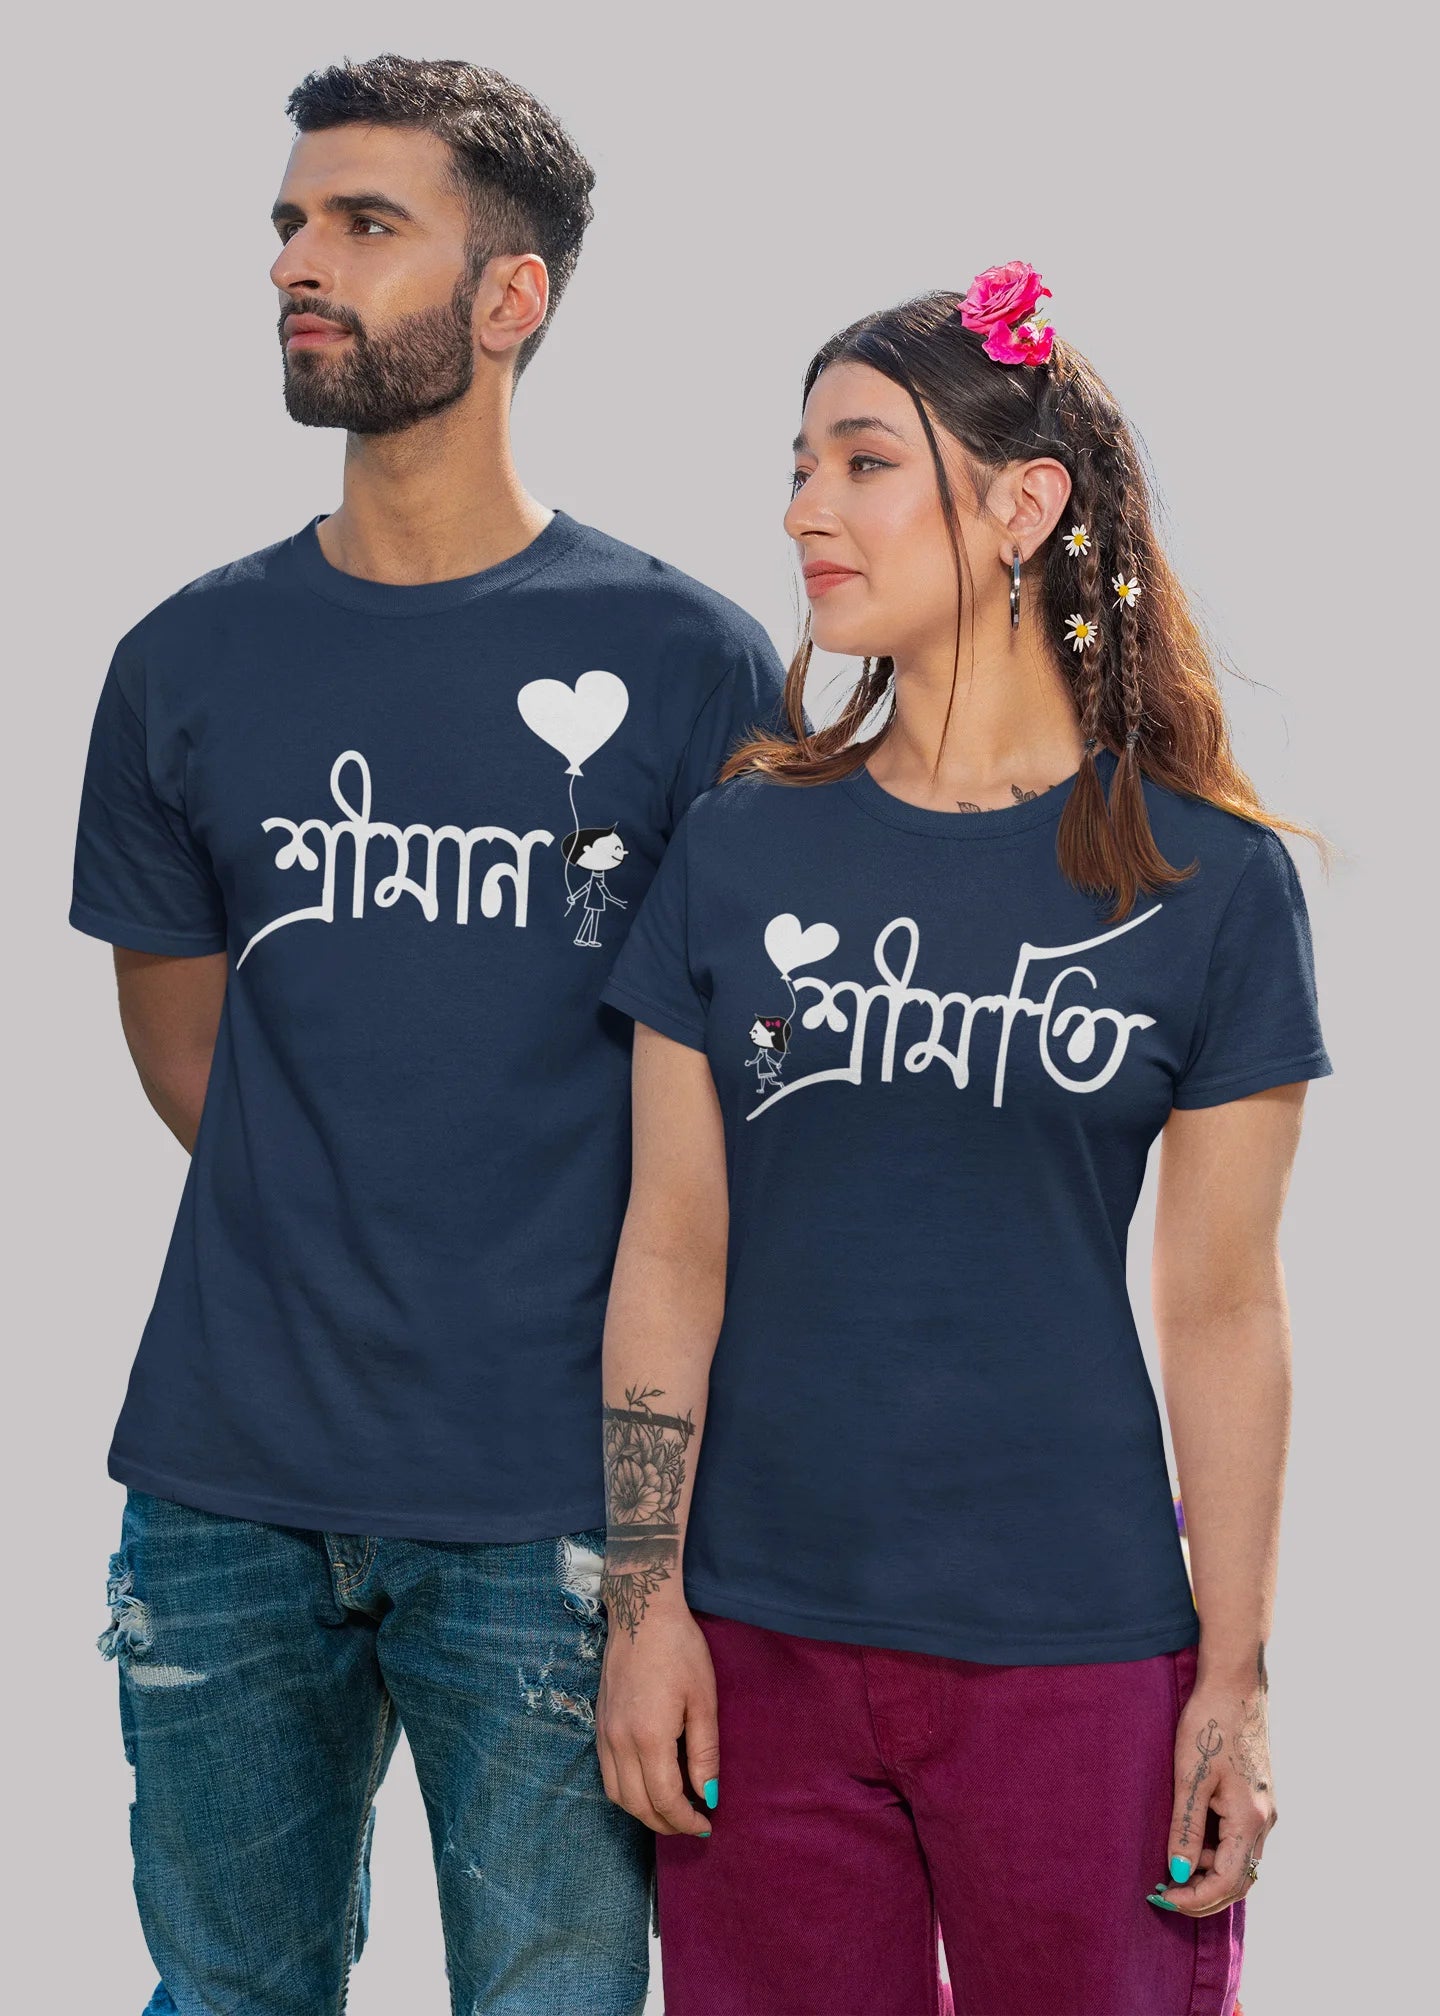 Shriman Shrimoti bengali Printed Couple T-shirt